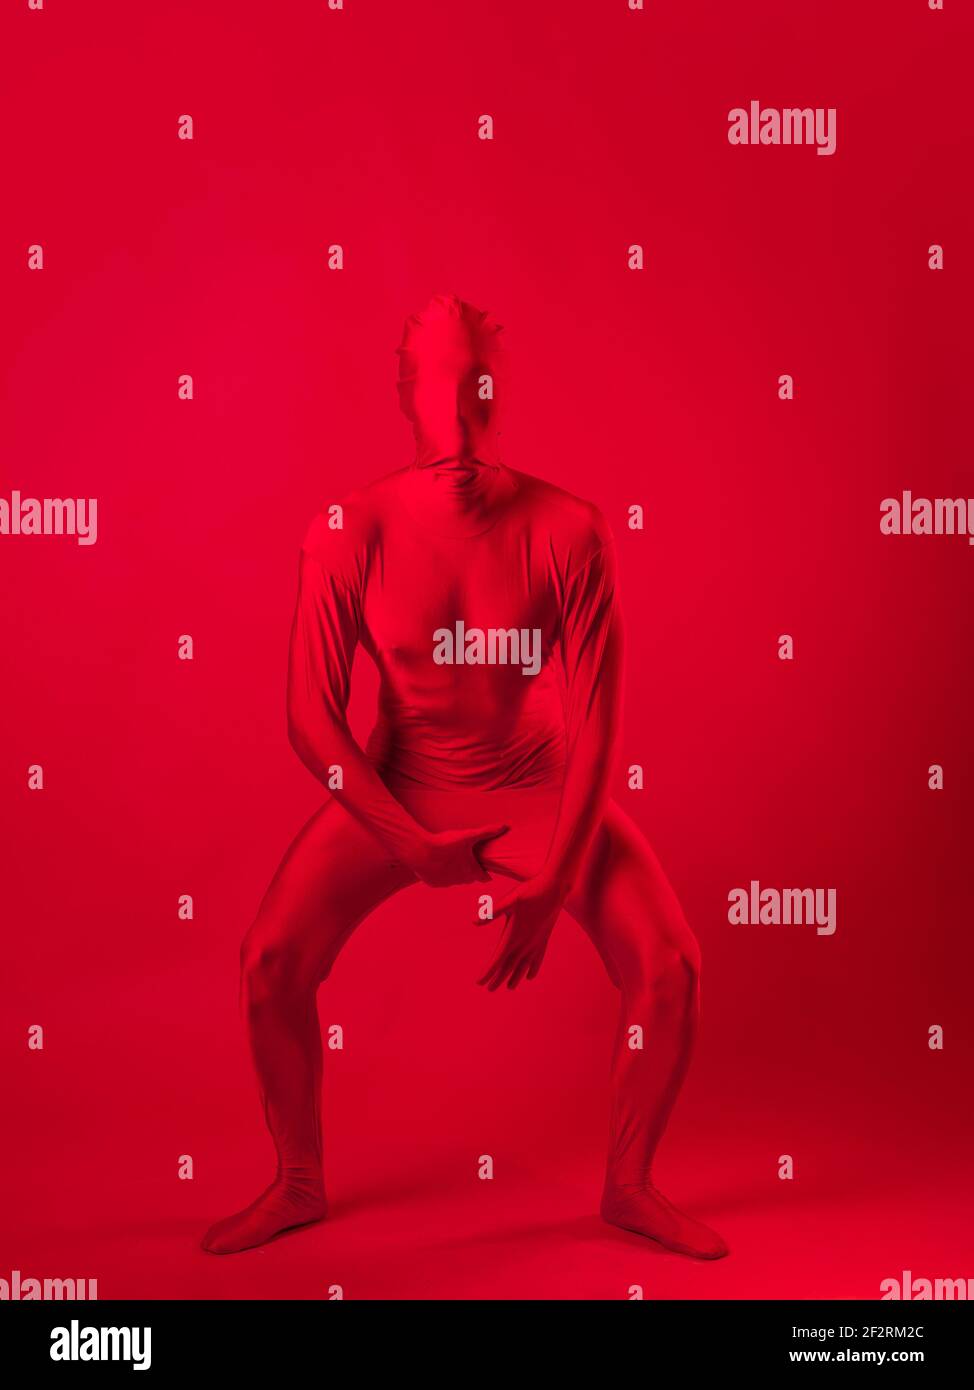 Verrückter roter Mann auf rotem Hintergrund. Figur in einem Trikot, das den ganzen Körper und das Gesicht bedeckt. Stockfoto